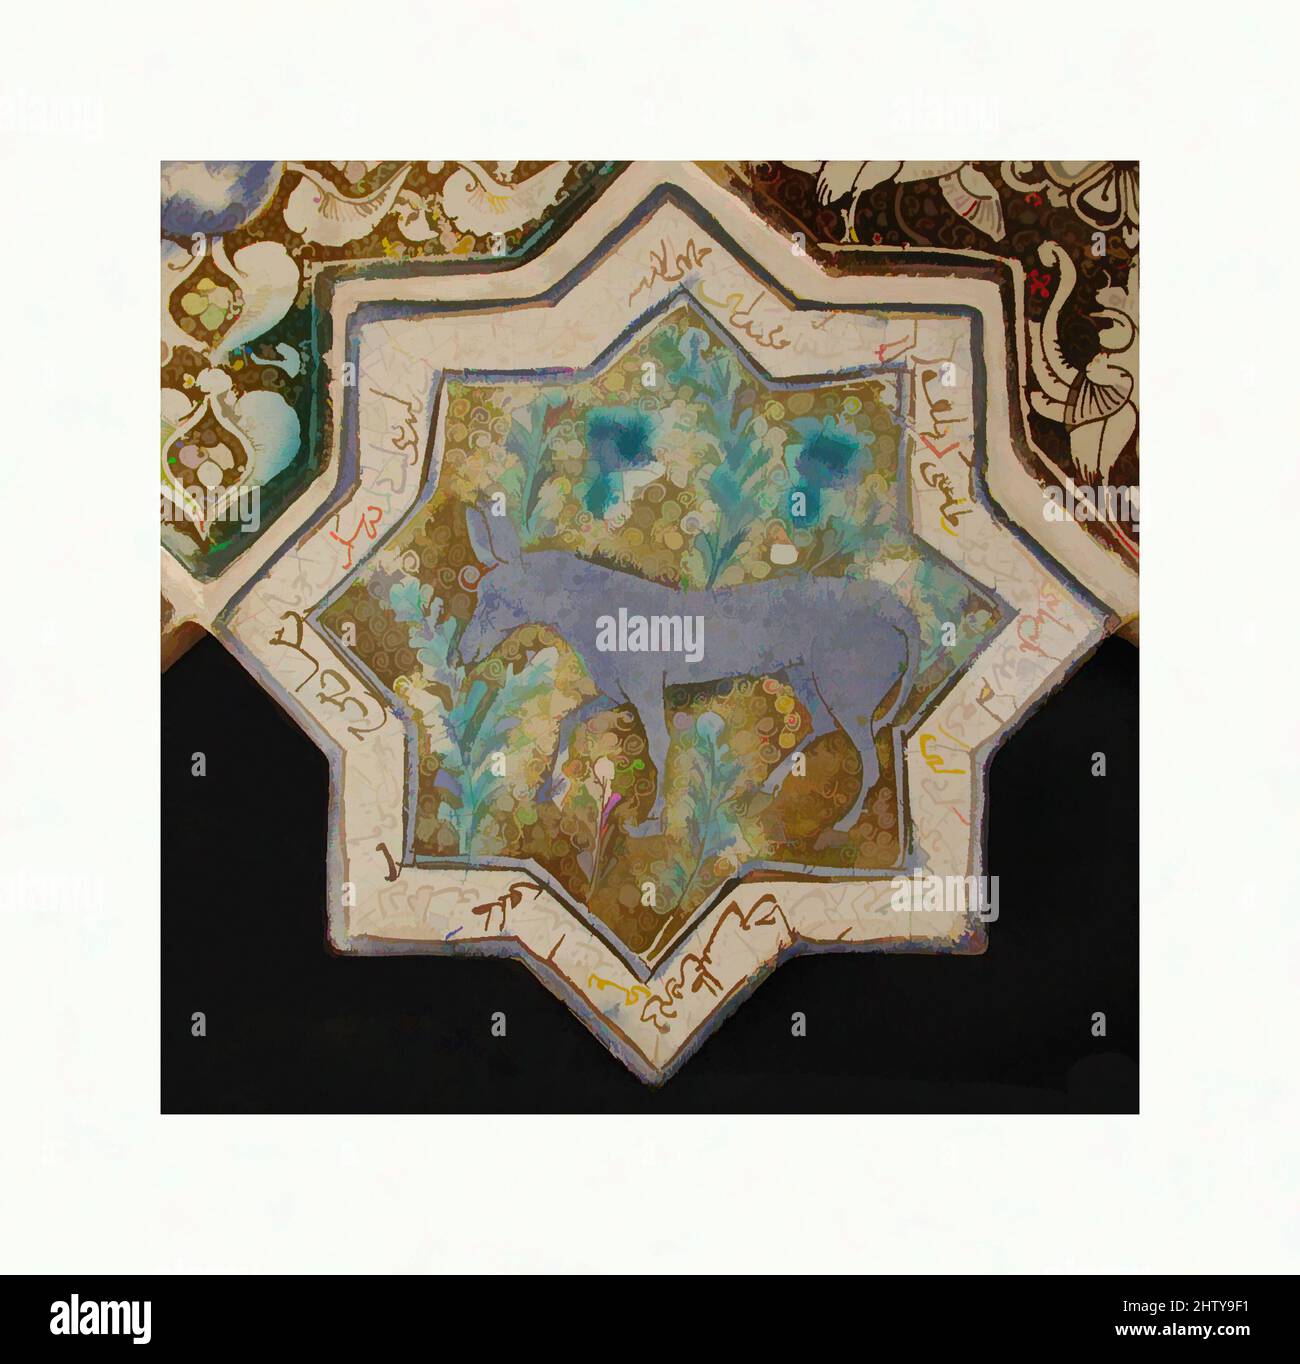 Art inspiré par les carreaux en forme d'étoile, 13th–14th siècle, fabriqués en Iran, probablement Kashan, Stonepaste; peinture à l'inglaze en bleu et turquoise et peinture lustrée sur vernis blanc opaque, 8 x 8 po. (20,3 x 20,3 cm), céramique-carreaux, cette tuile à huit pointes a été une fois partie d'un panneau d'étoiles et, les oeuvres classiques modernisées par Artotop avec une touche de modernité. Formes, couleur et valeur, impact visuel accrocheur sur l'art émotions par la liberté d'œuvres d'art d'une manière contemporaine. Un message intemporel qui cherche une nouvelle direction créative. Artistes qui se tournent vers le support numérique et créent le NFT Artotop Banque D'Images